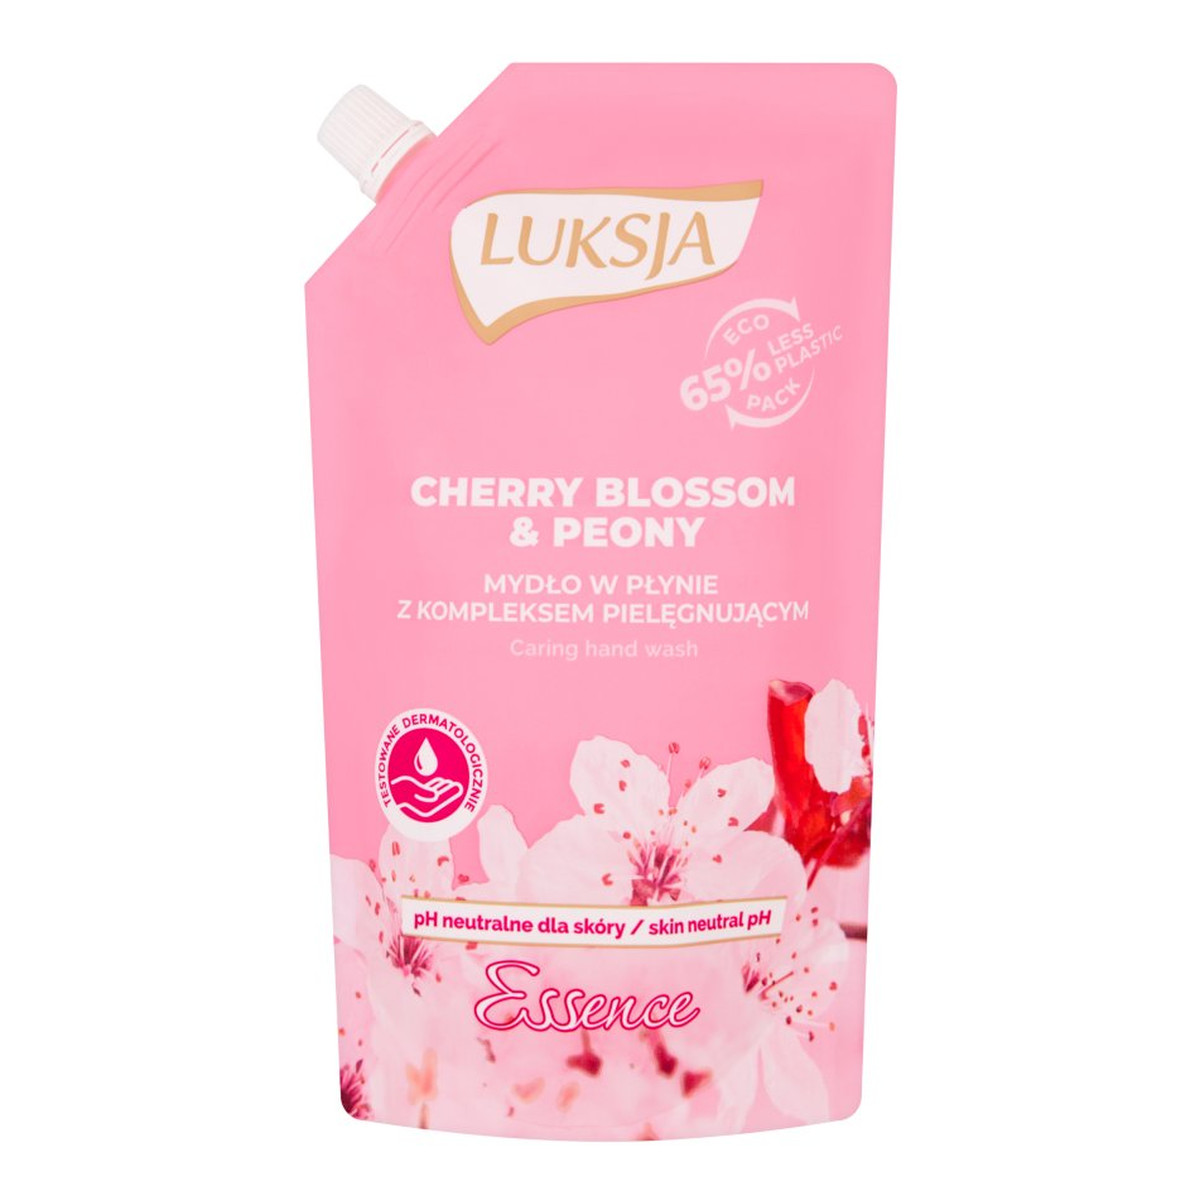 Luksja Essence Mydło w płynie opakowanie uzupełniające Cherry Blossom & Peony 400ml